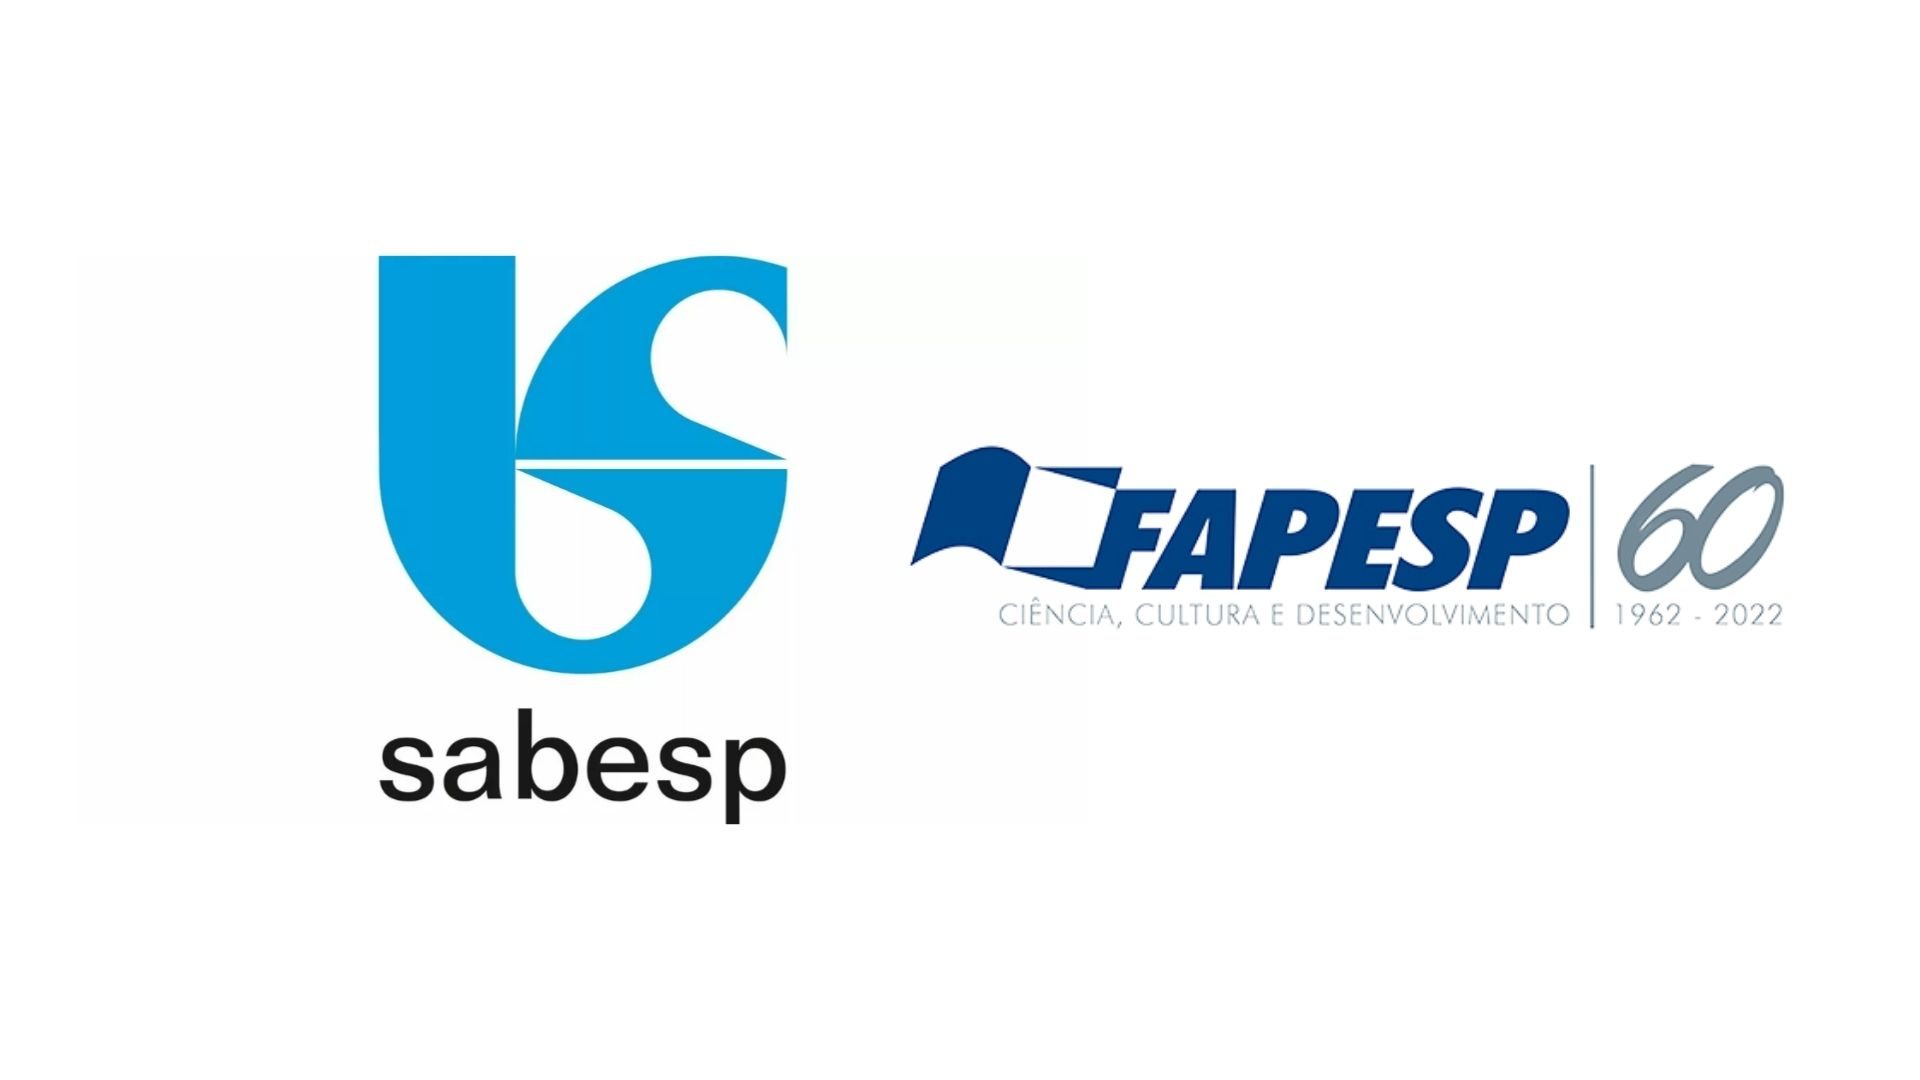 Imagem da logomarca das empresas Sabesp e Fapesp